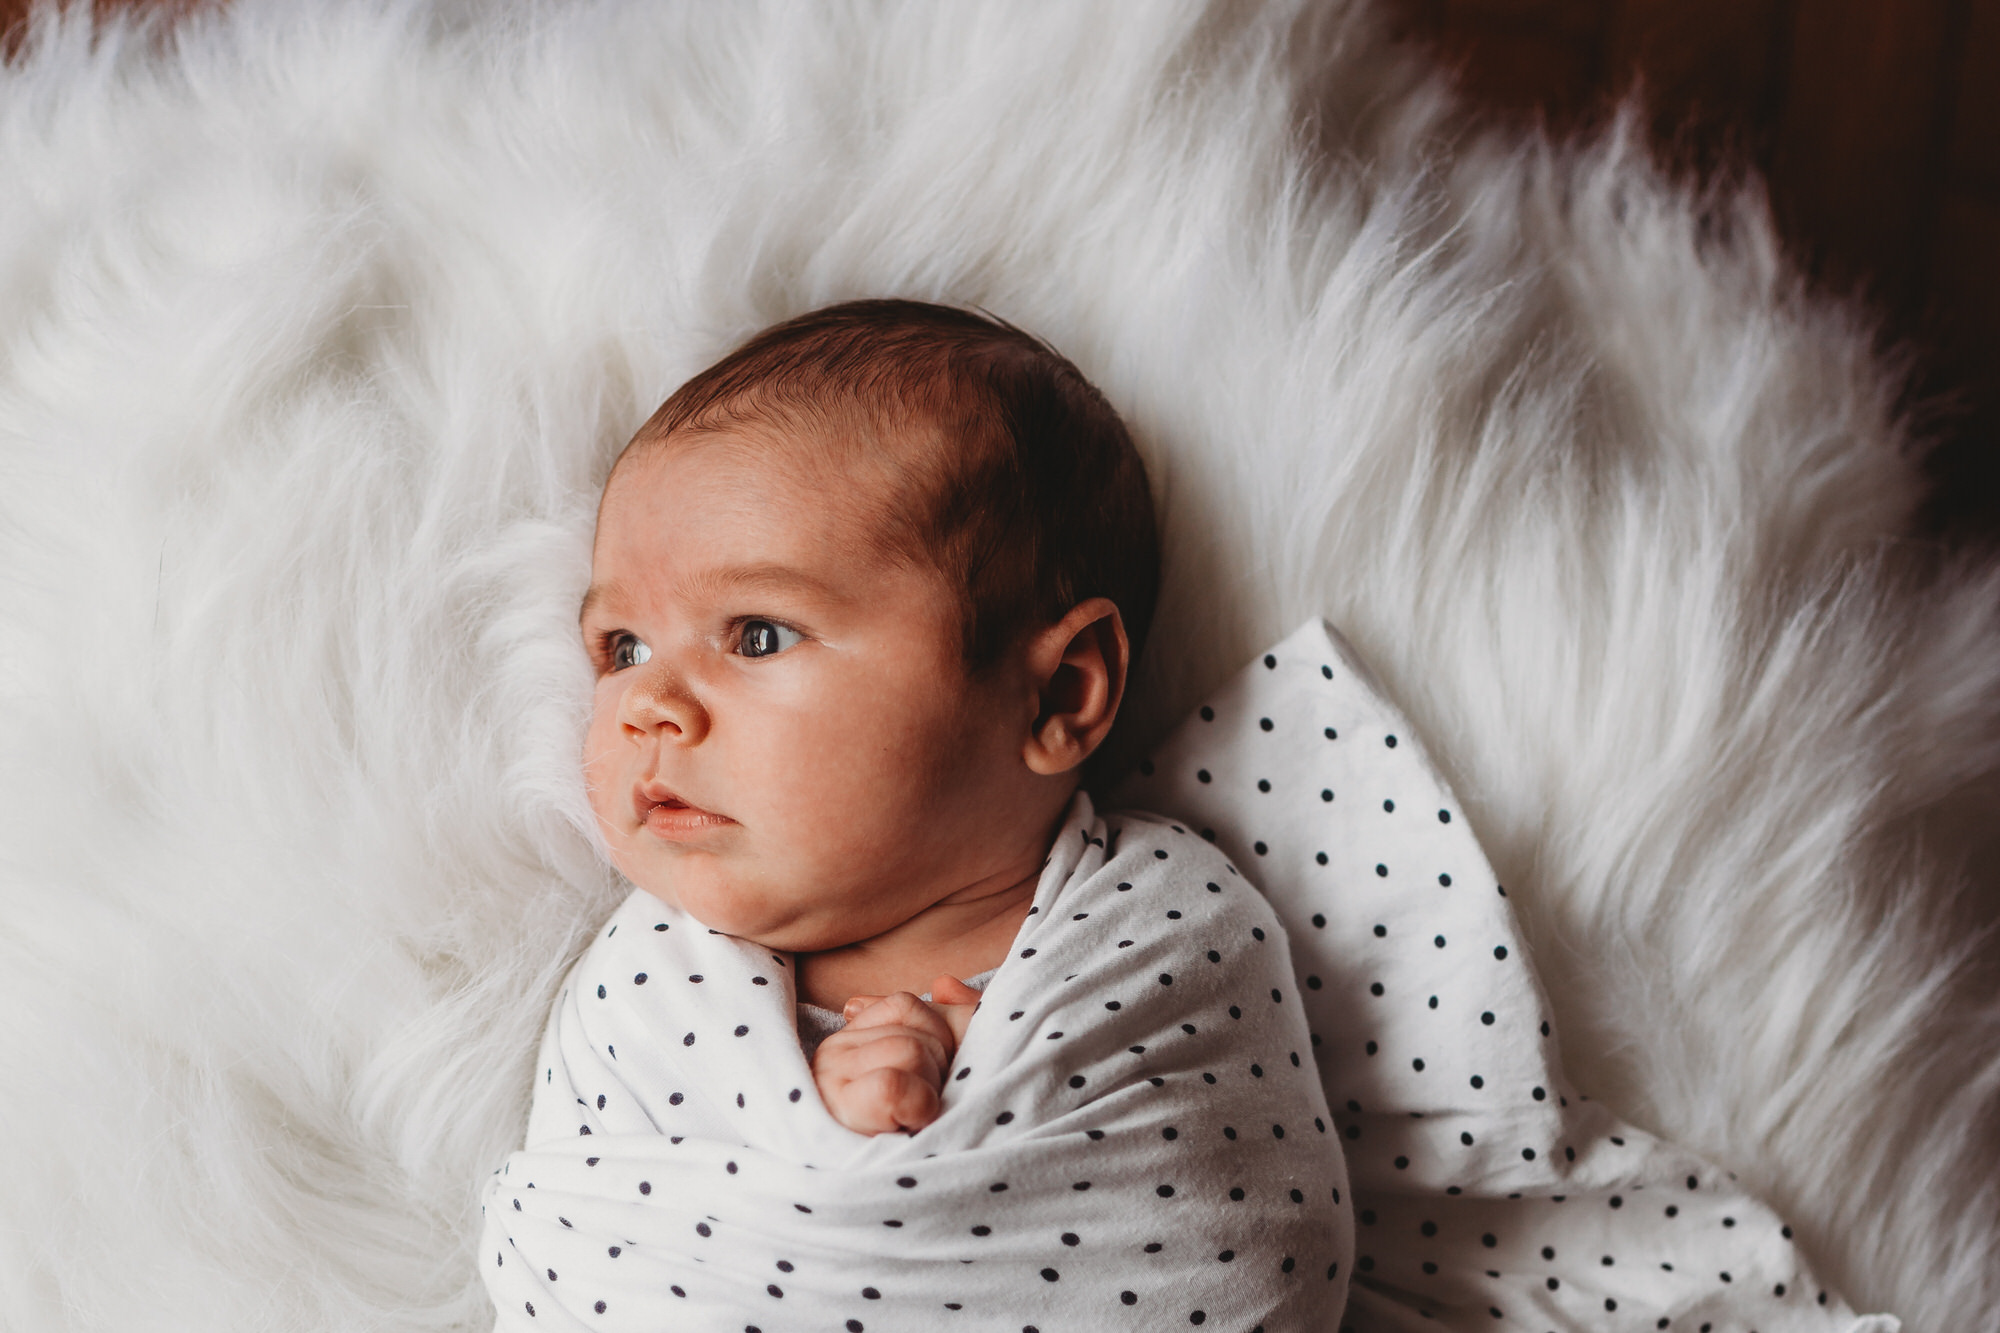 Tillsonburg Family Photographer - newborn photographer